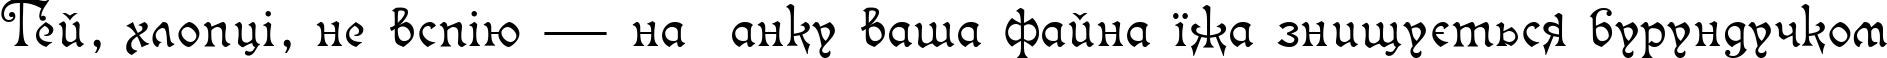 Пример написания шрифтом Isabella-Decor текста на украинском